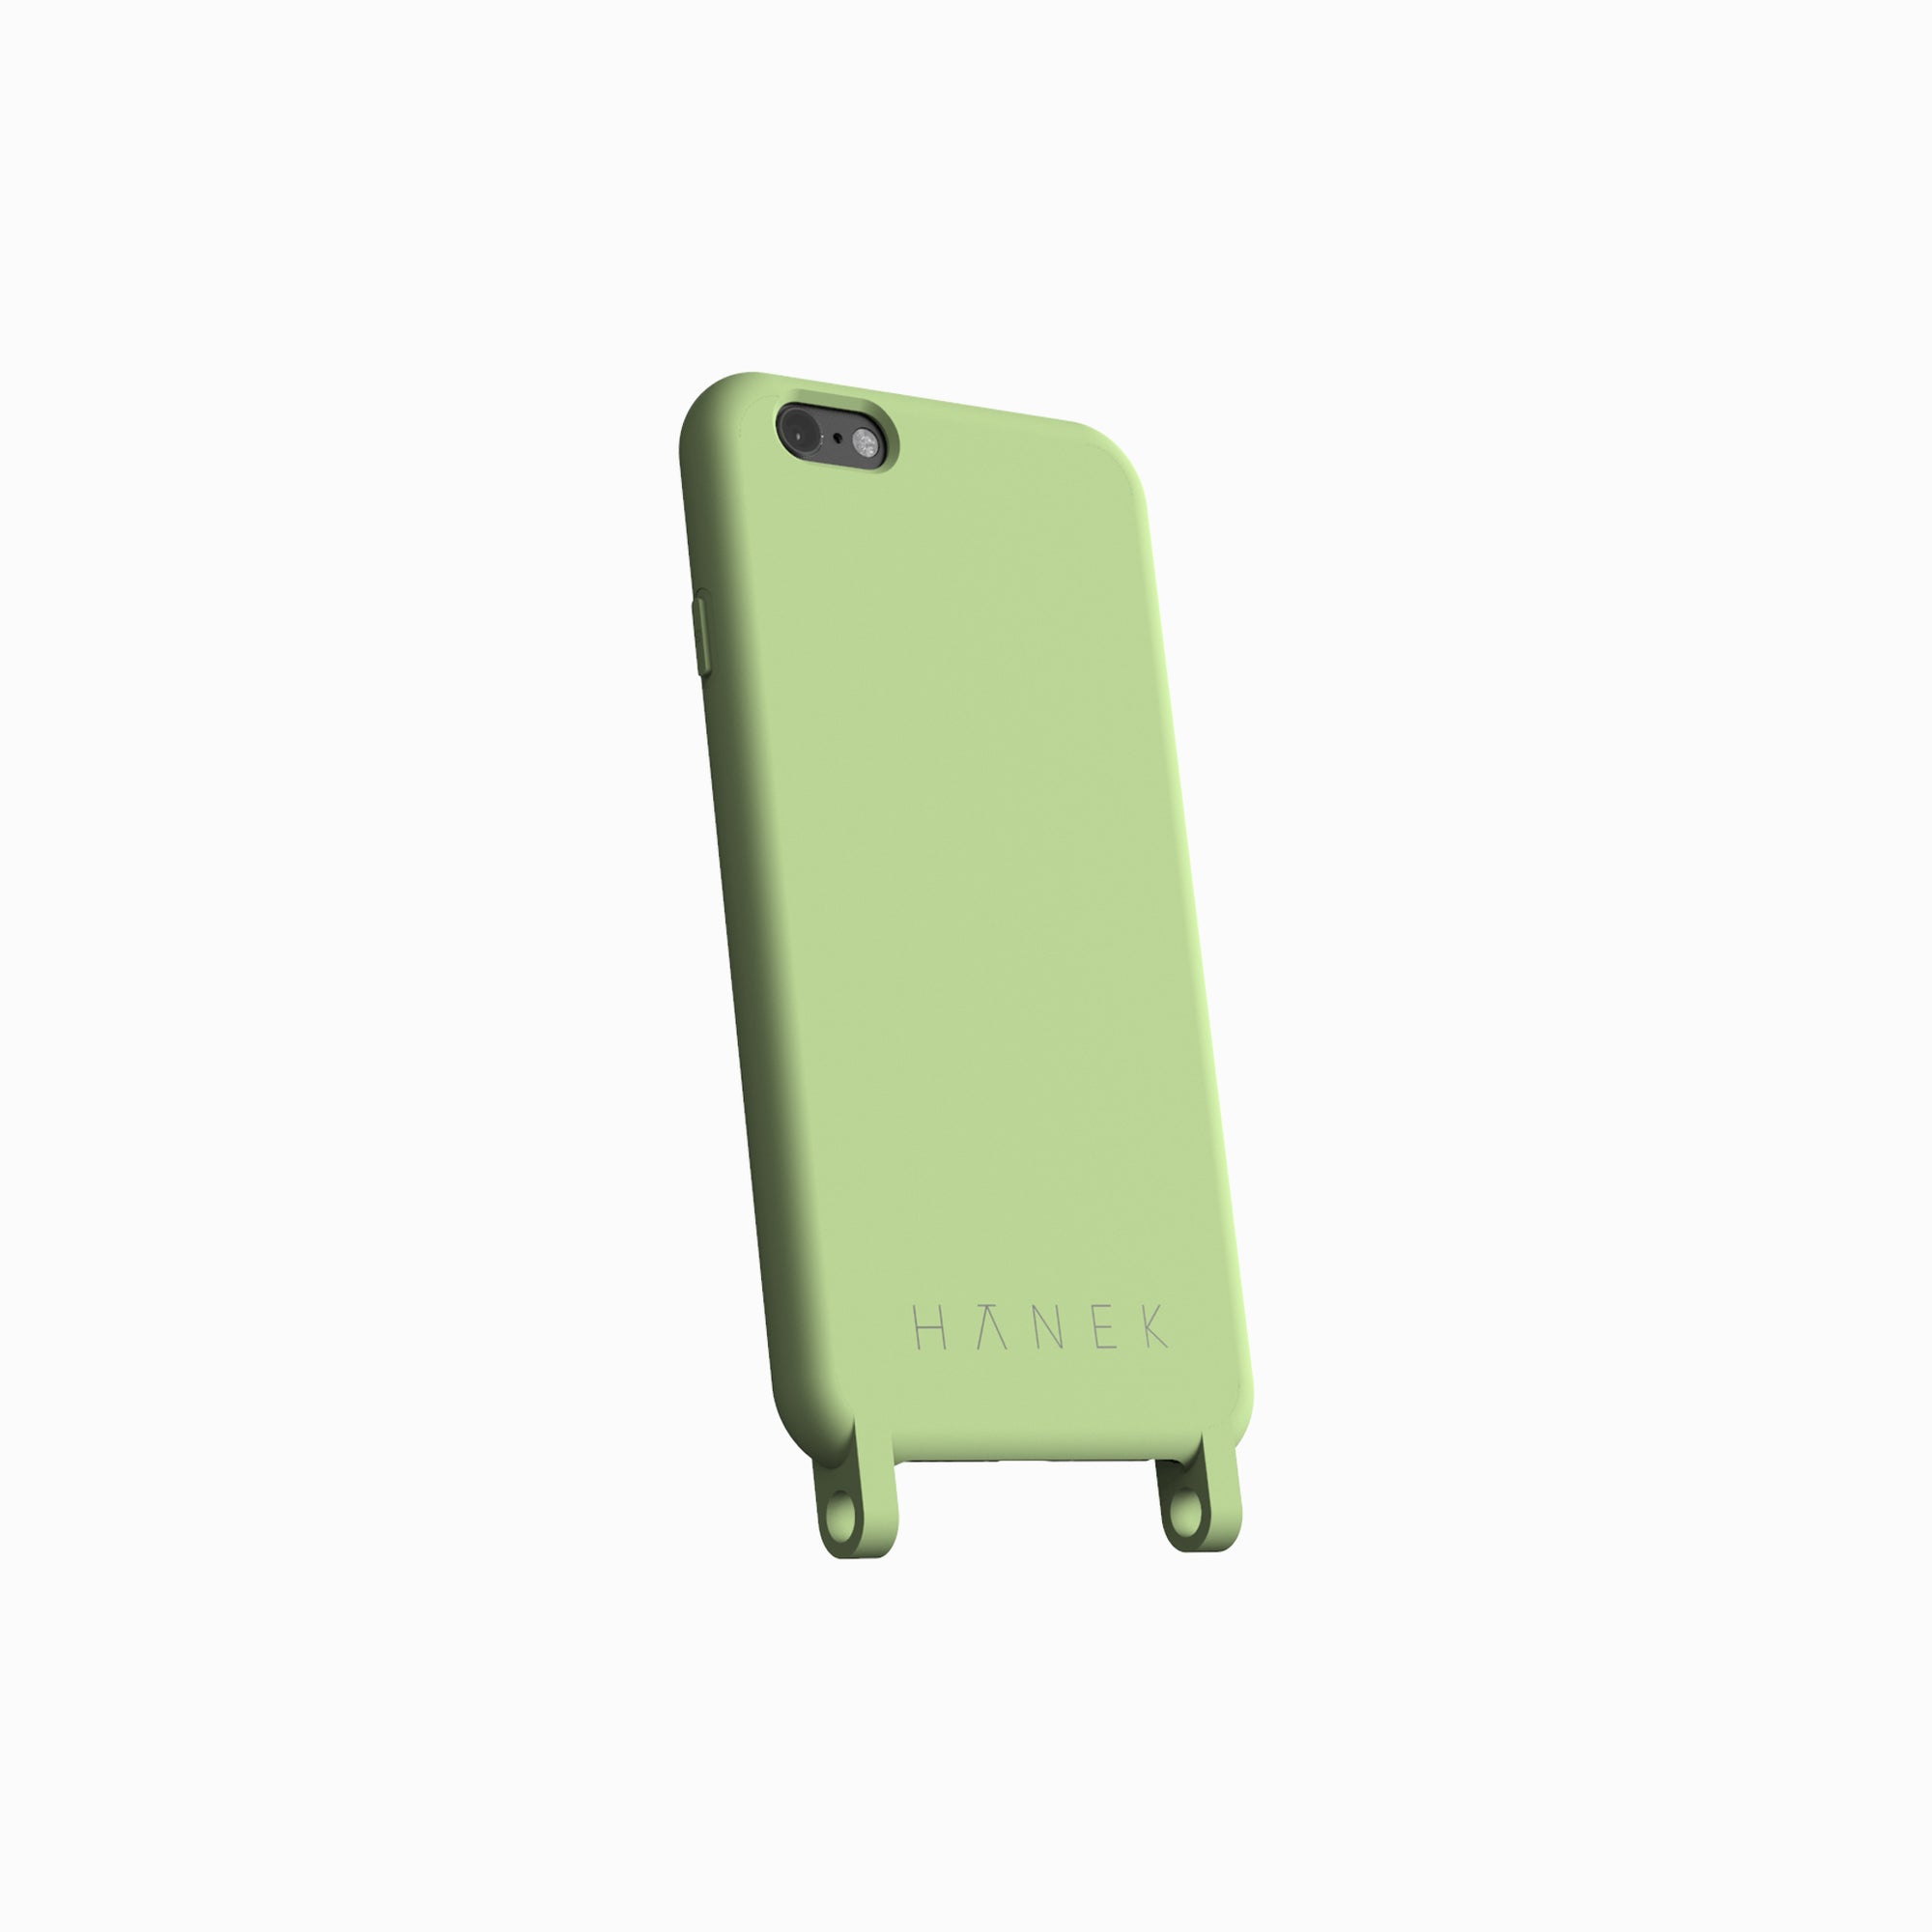 Funda Colgante transparente con cordón color Verde-Dorado para Iphone 11  (6.1)